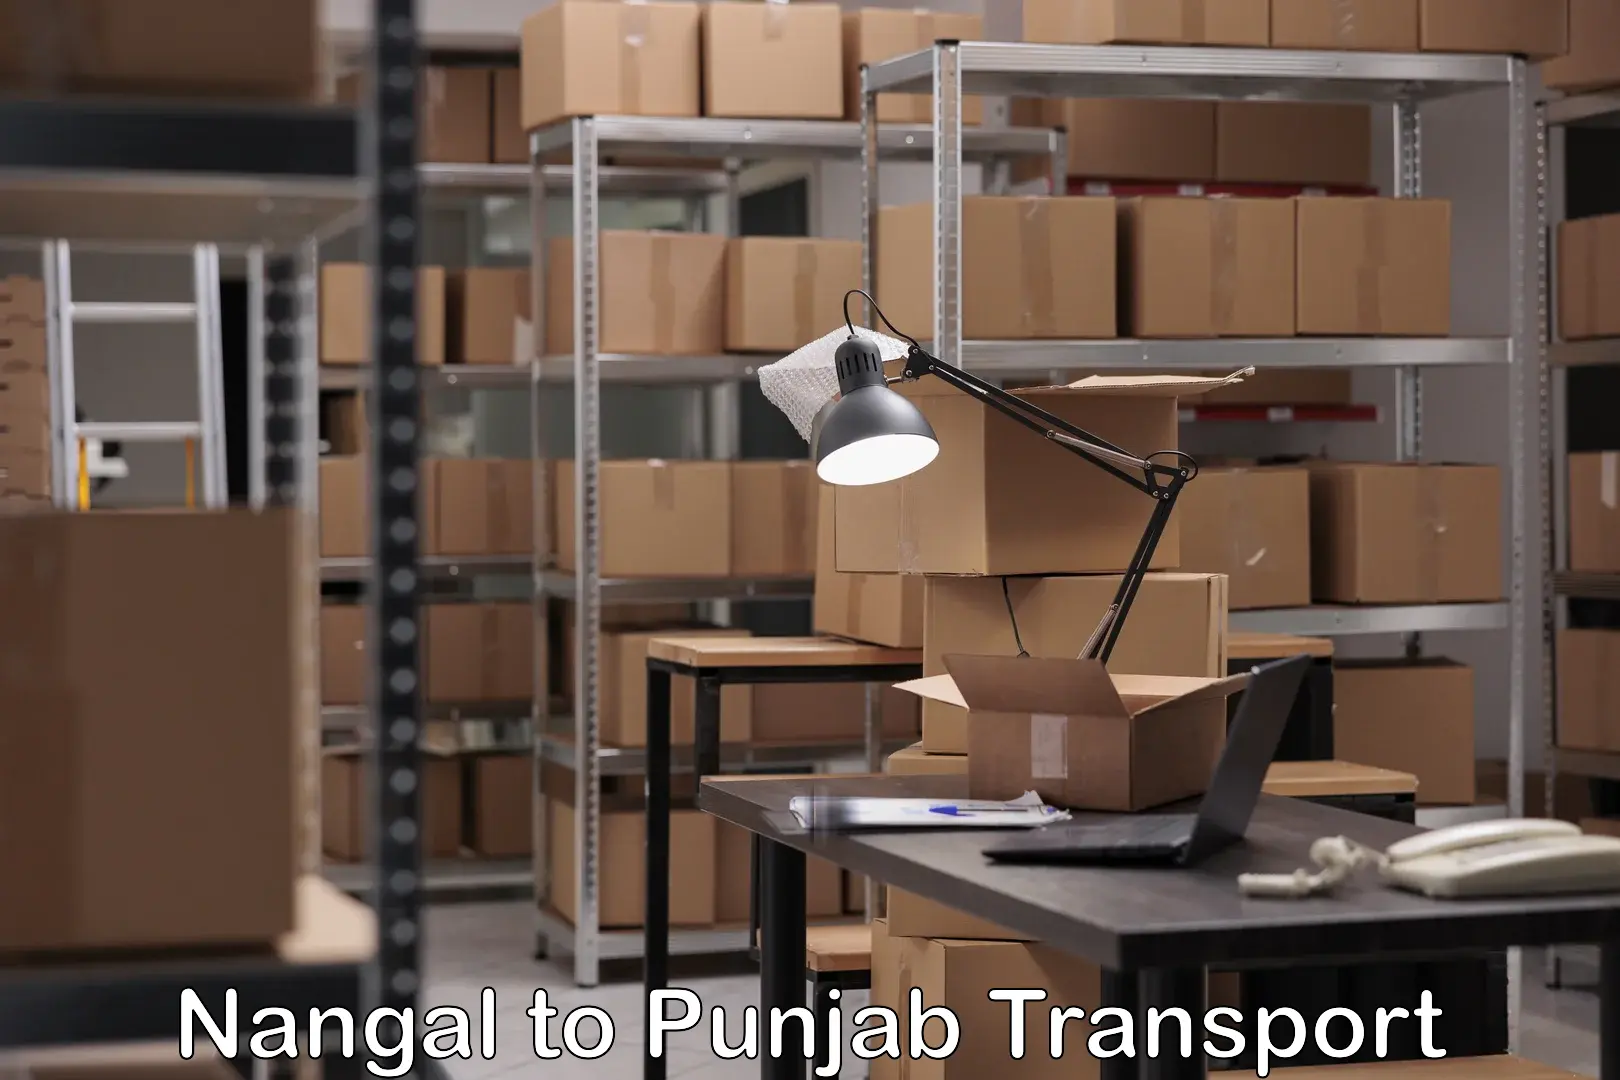 Transport services Nangal to Punjab